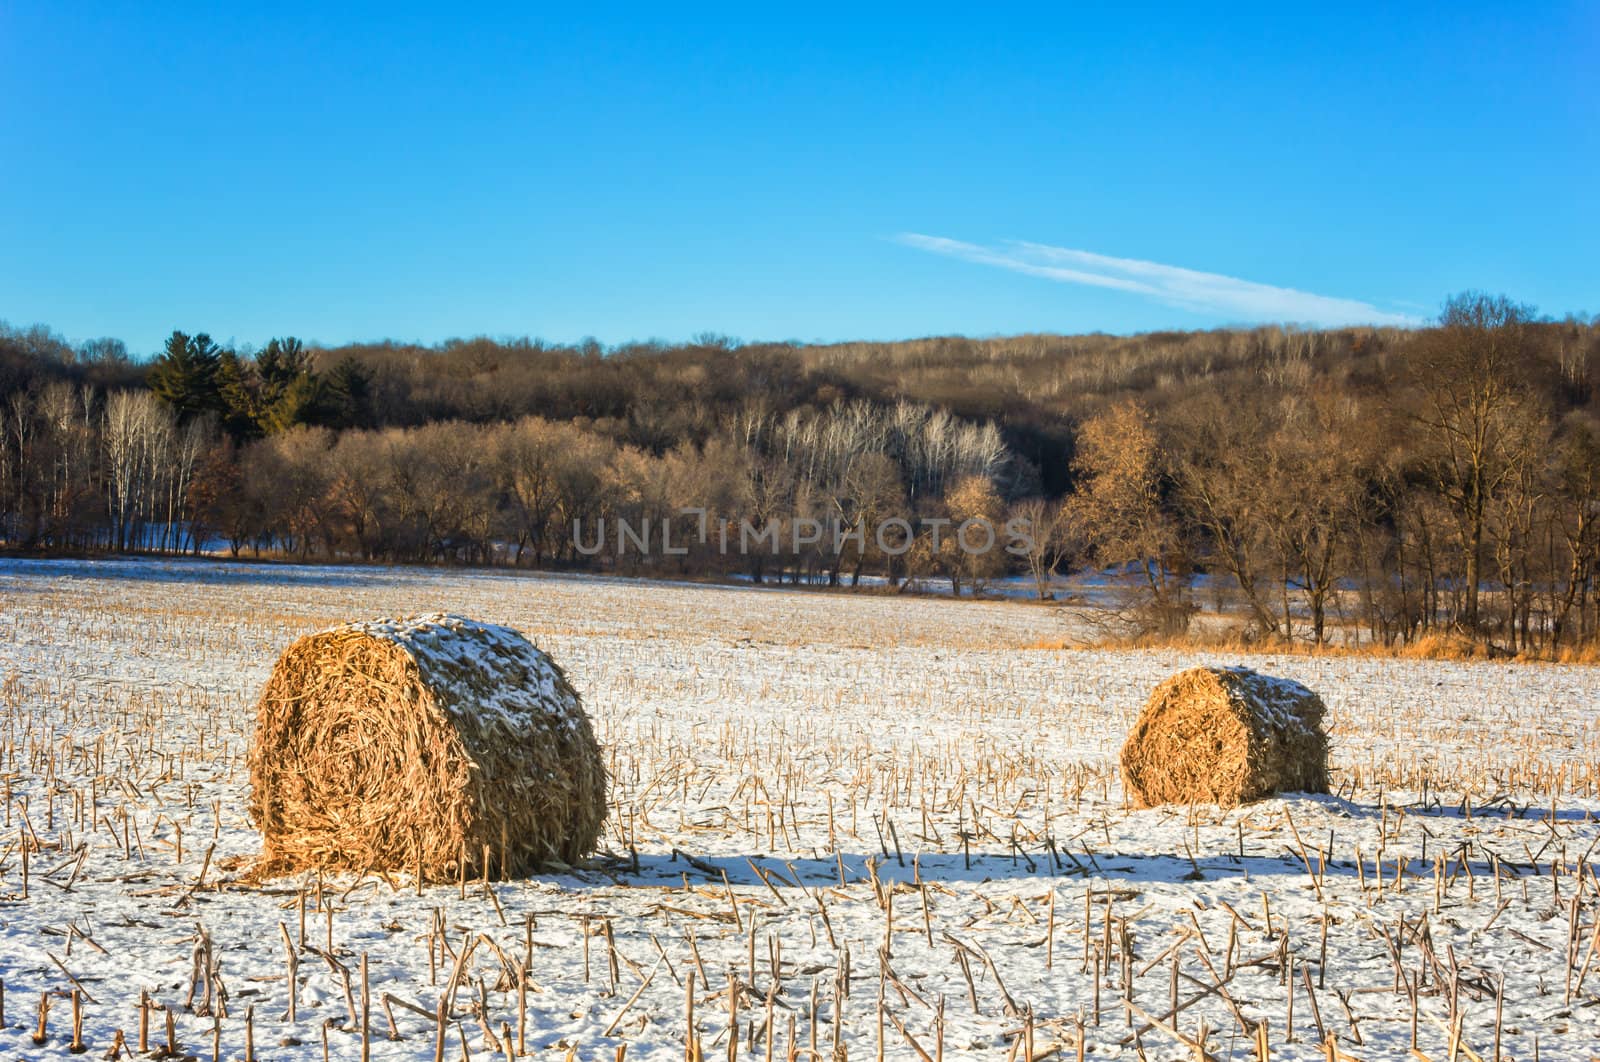 Haystacks on the Frozen Field in Rural Minnesota.